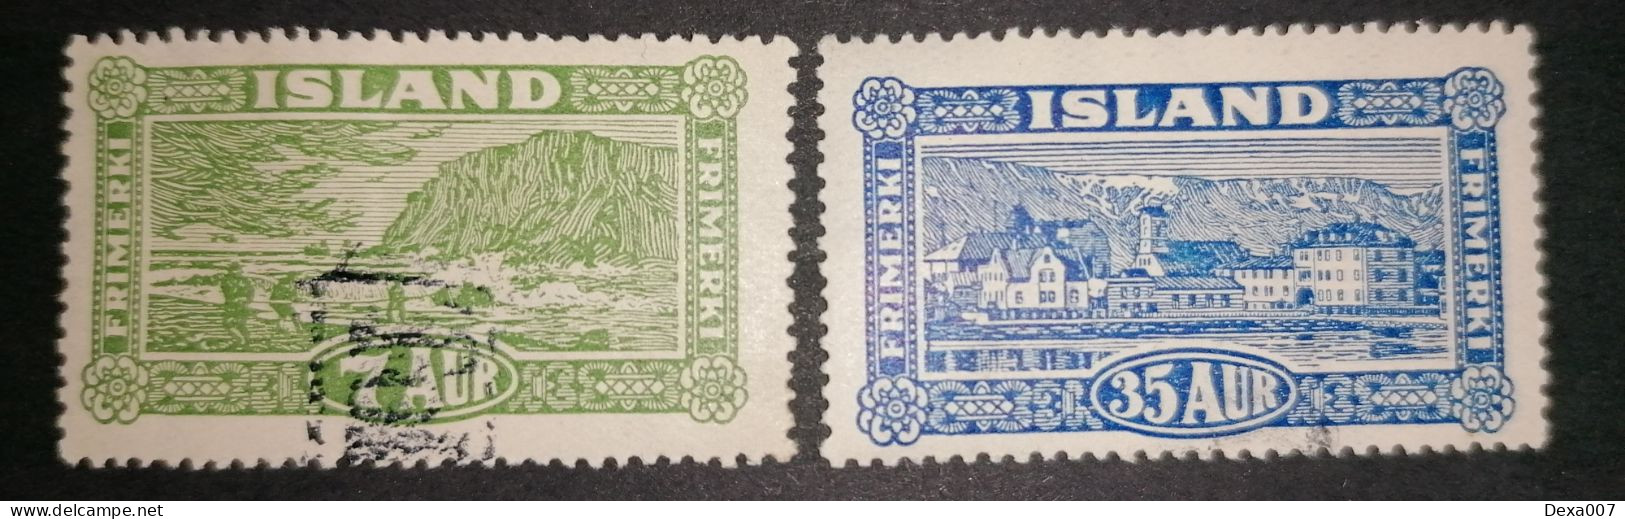 Iceland 1925 Landscapes Precanceled? Gum Intact - Unused Stamps